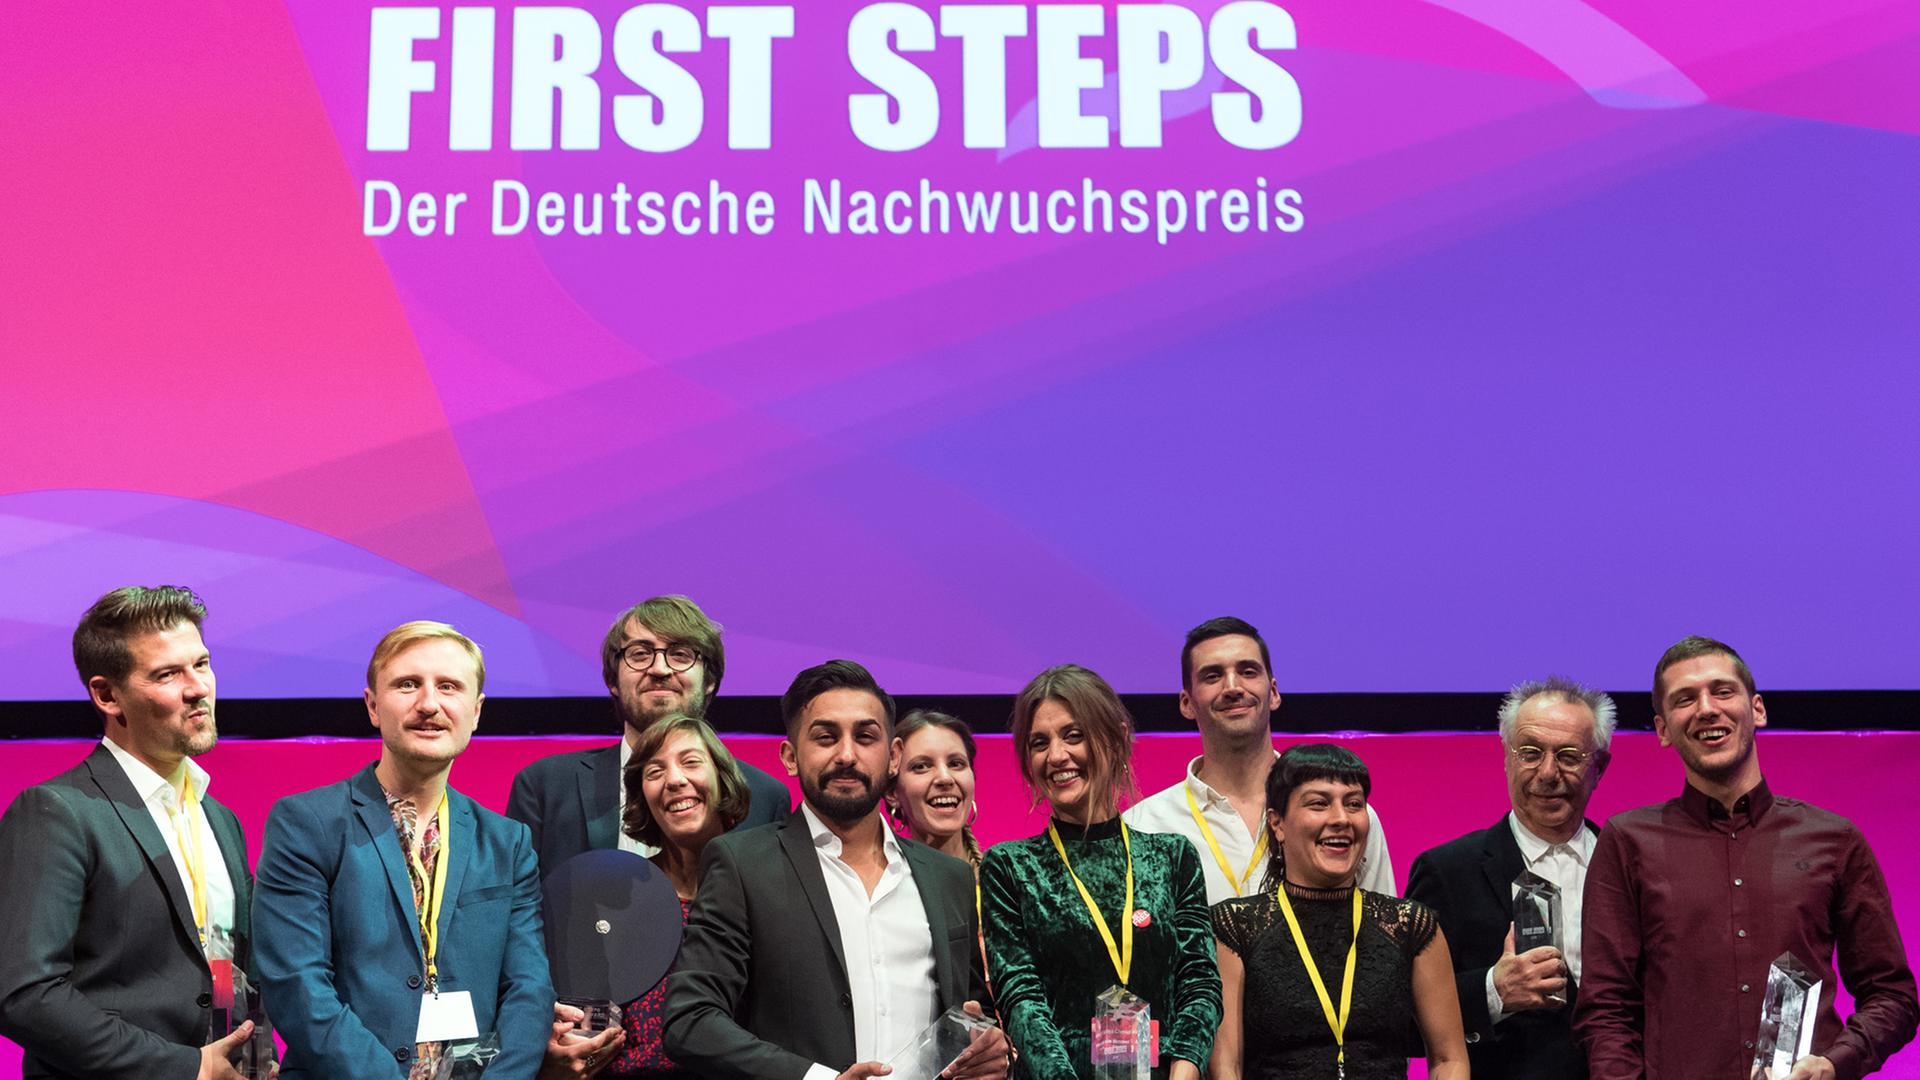 Die Preisträger der First Steps Award 2018